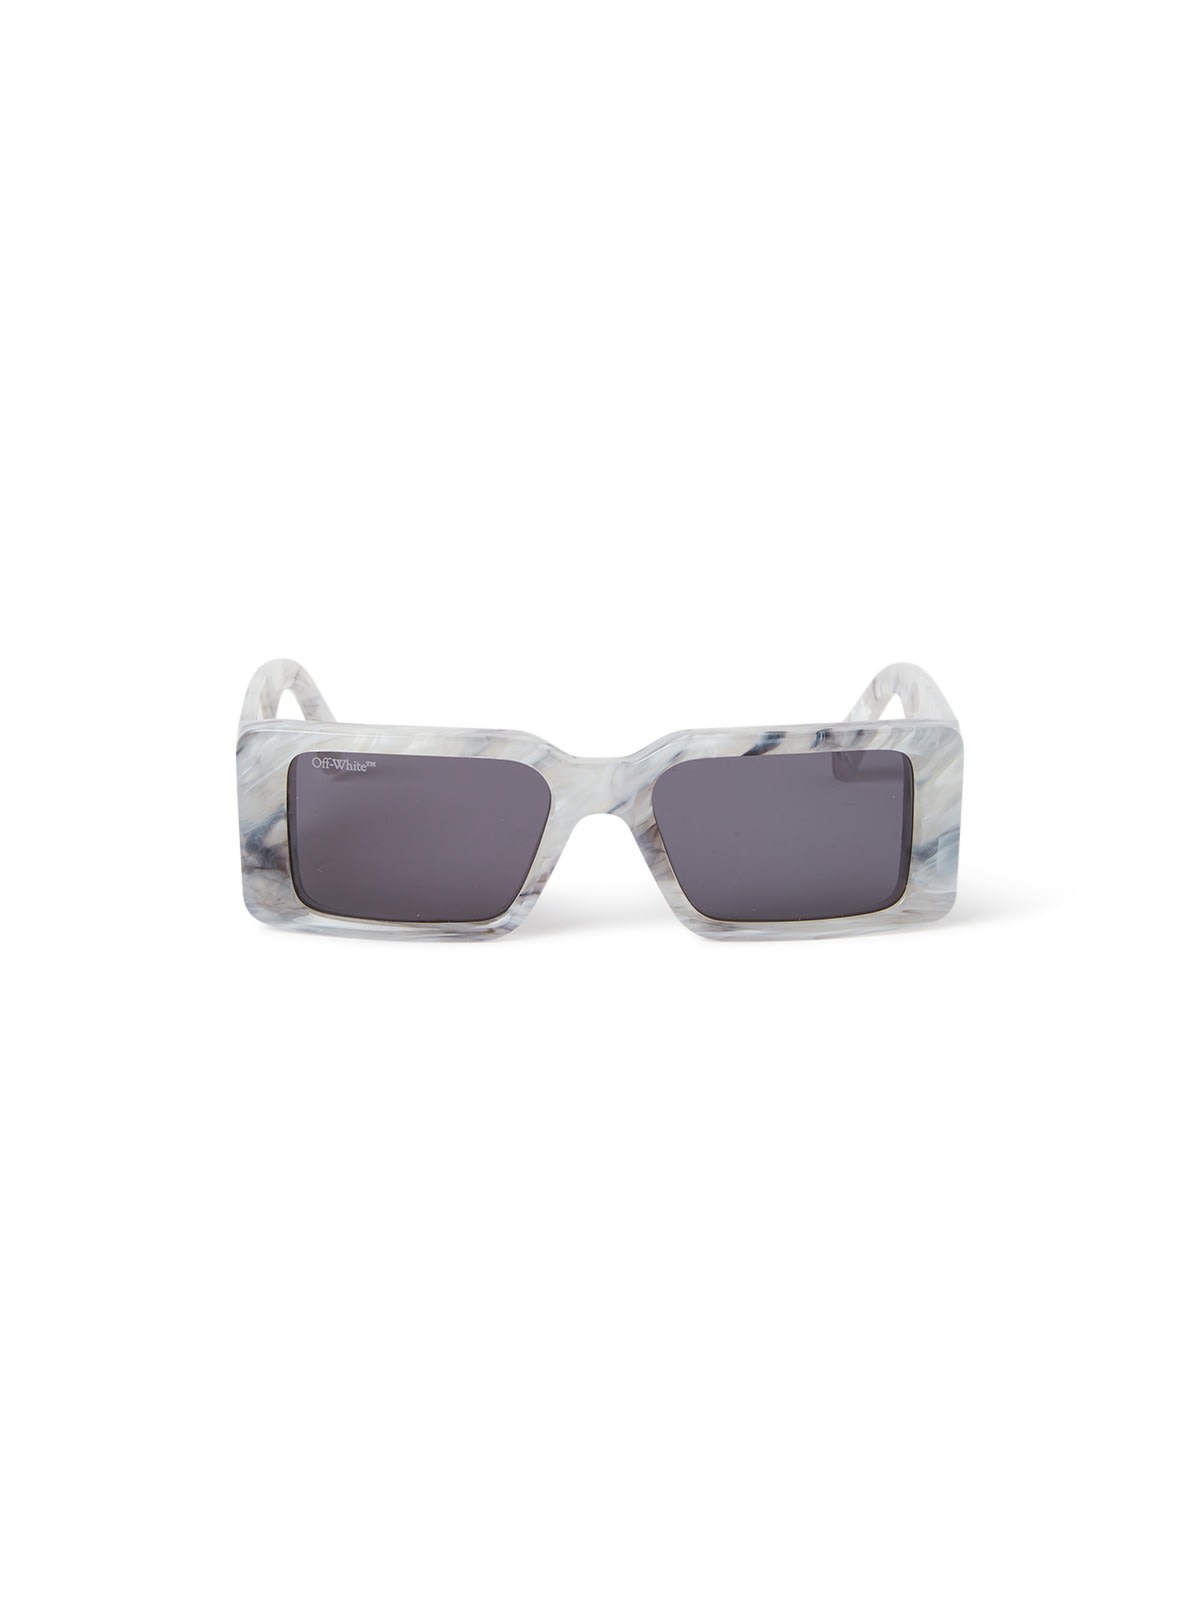 Off-white Oeri097 Milano Sunglasses In Marble